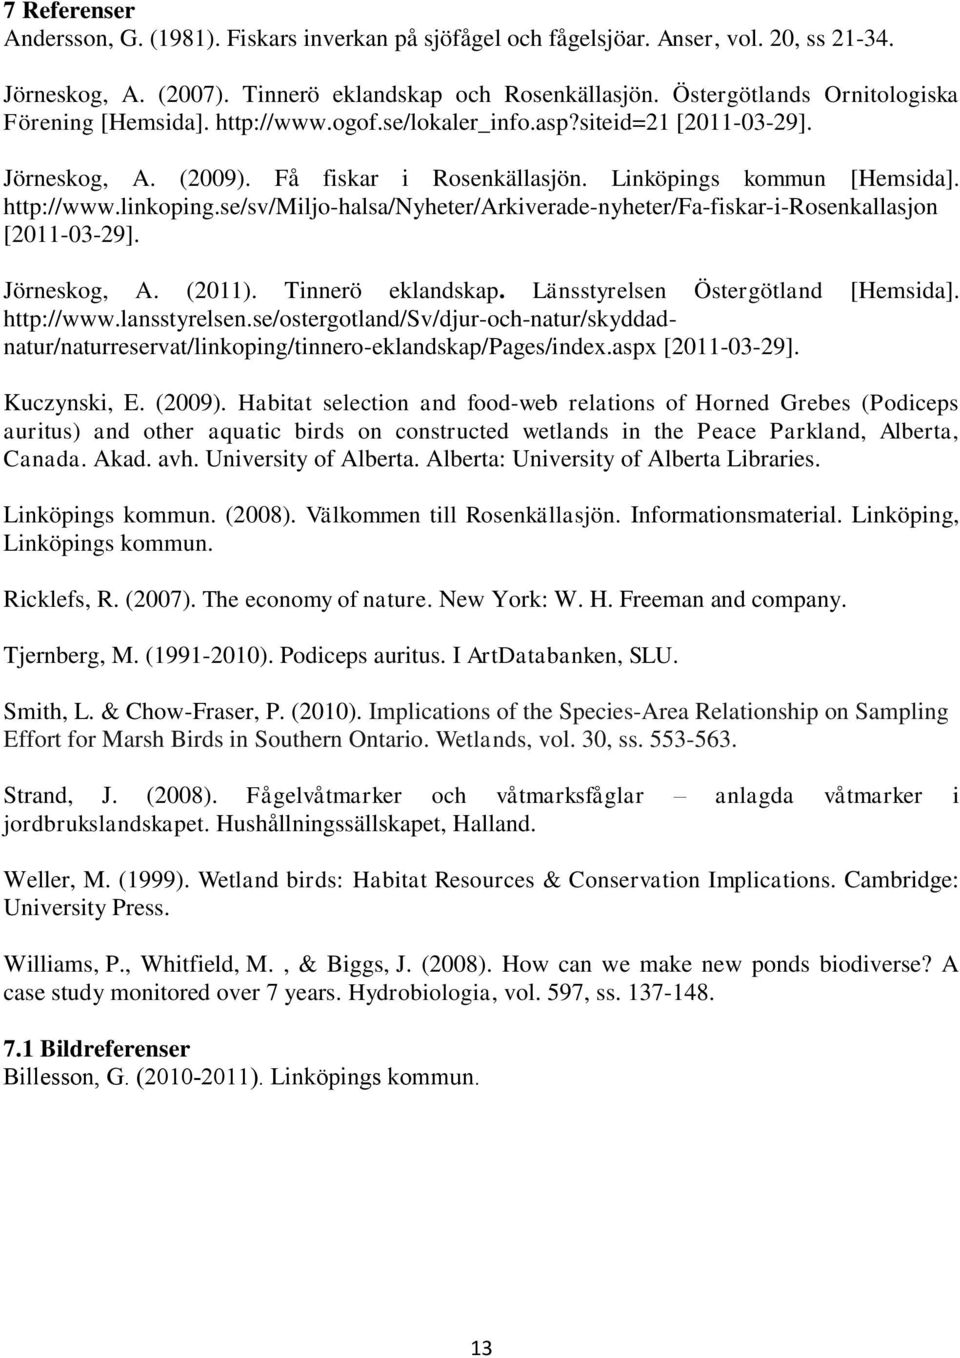 se/sv/miljo-halsa/nyheter/arkiverade-nyheter/fa-fiskar-i-rosenkallasjon [2011-03-29]. Jörneskog, A. (2011). Tinnerö eklandskap. Länsstyrelsen Östergötland [Hemsida]. http://www.lansstyrelsen.